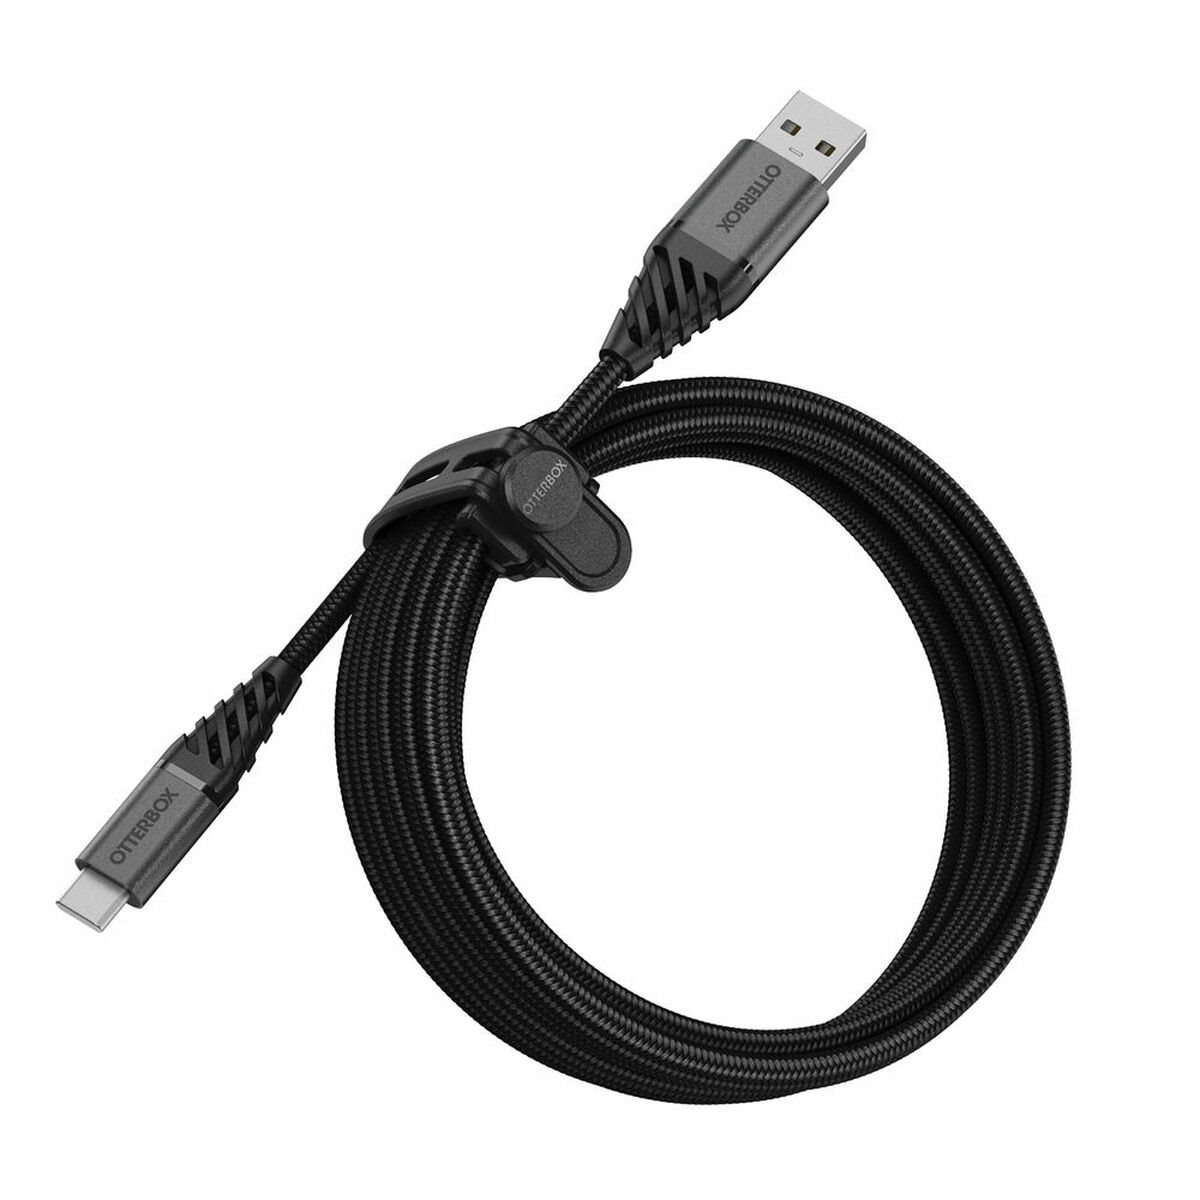 Cable Alargador USB Hama 00200619 1,5 m Negro 